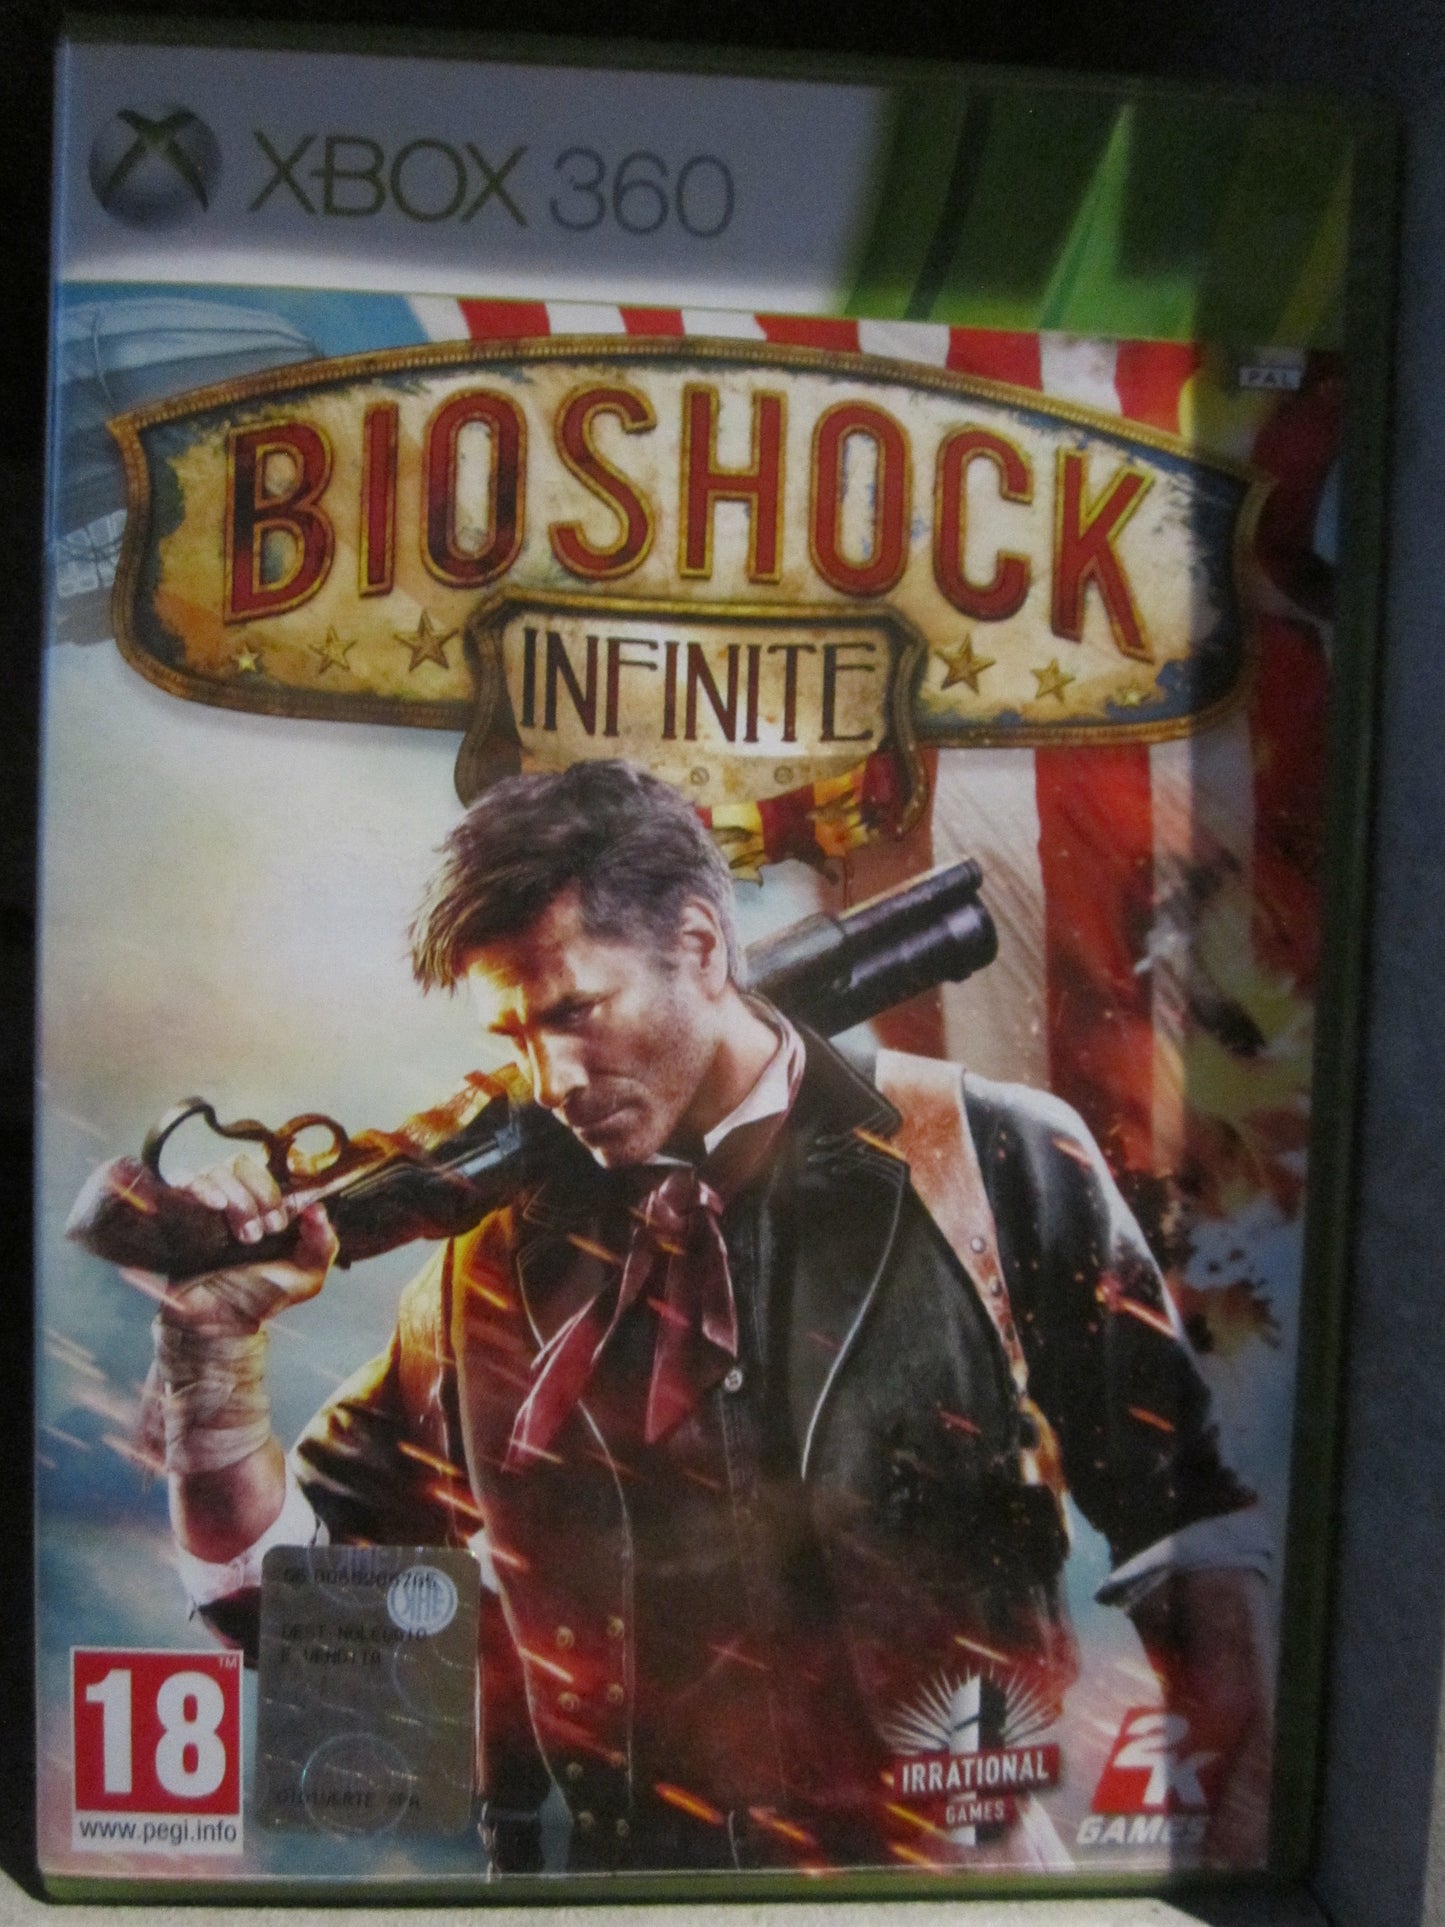 Bioshock Infinite